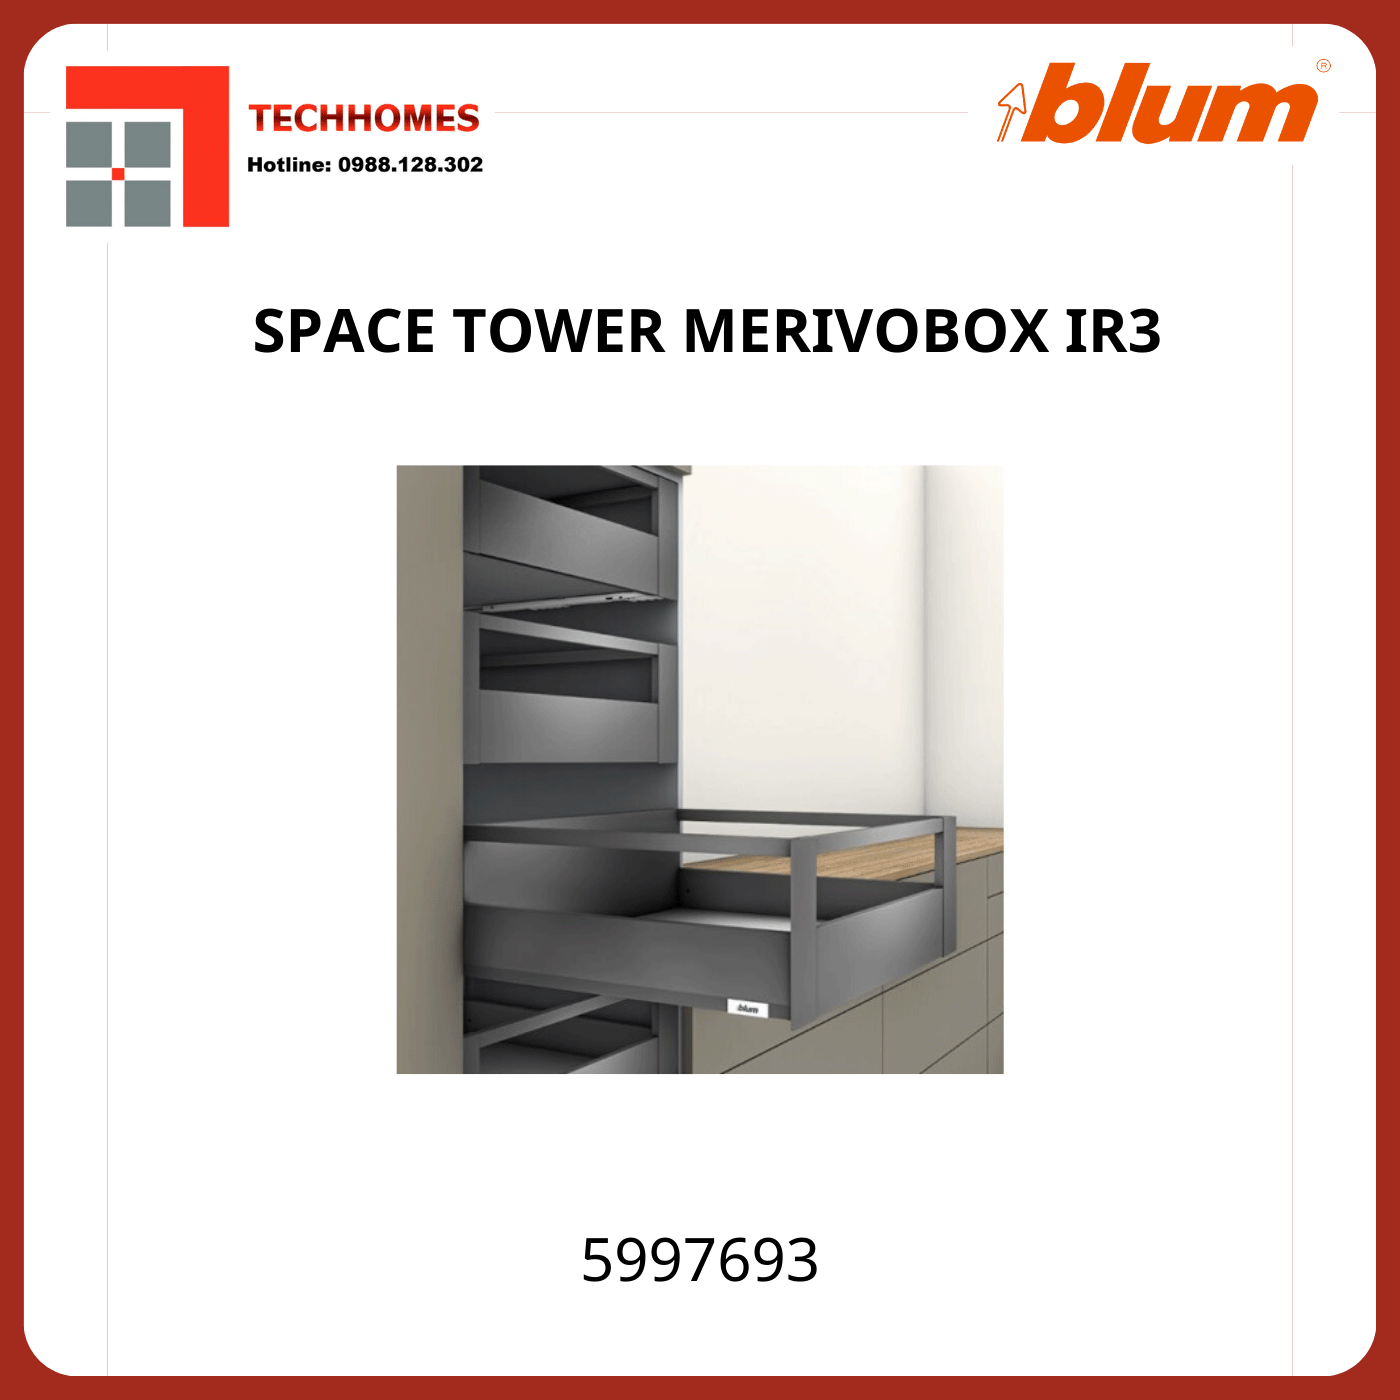 Tủ đồ khô Blum SPACE TOWER MERIVOBOX IR3, 5997693, xám nhạt